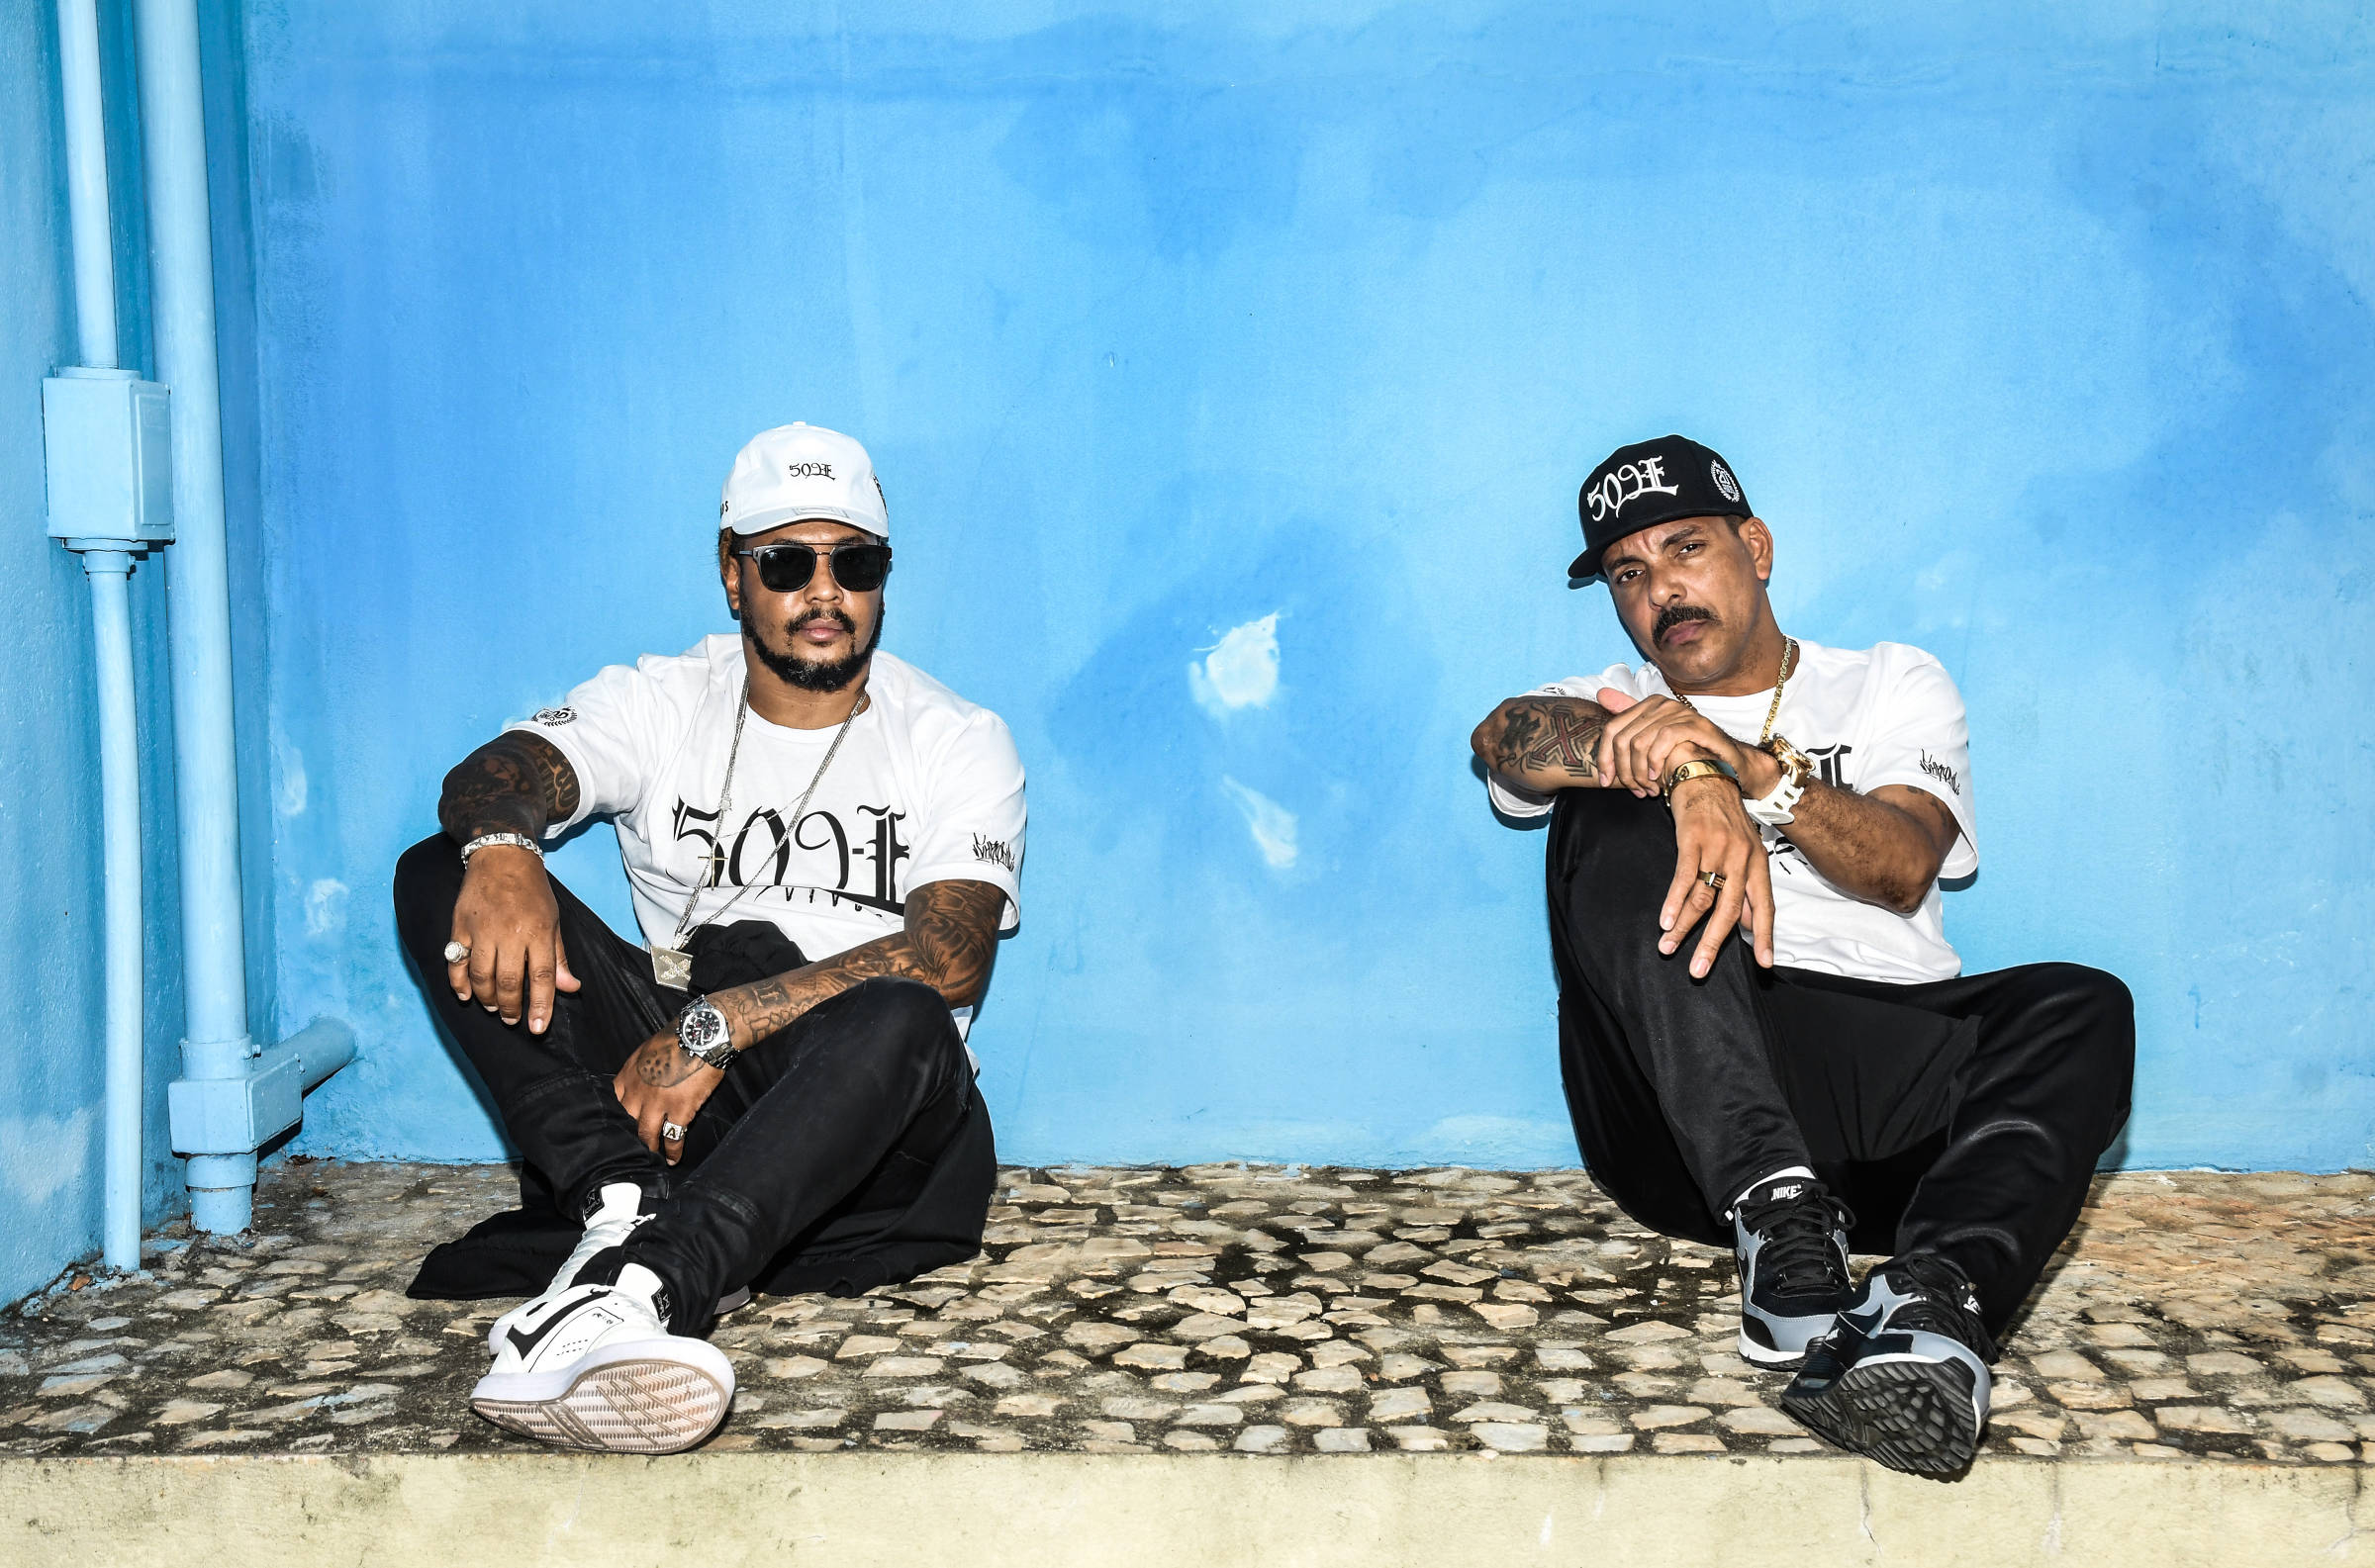 Os 20 rappers brasileiros com maior número de ouvintes mensais